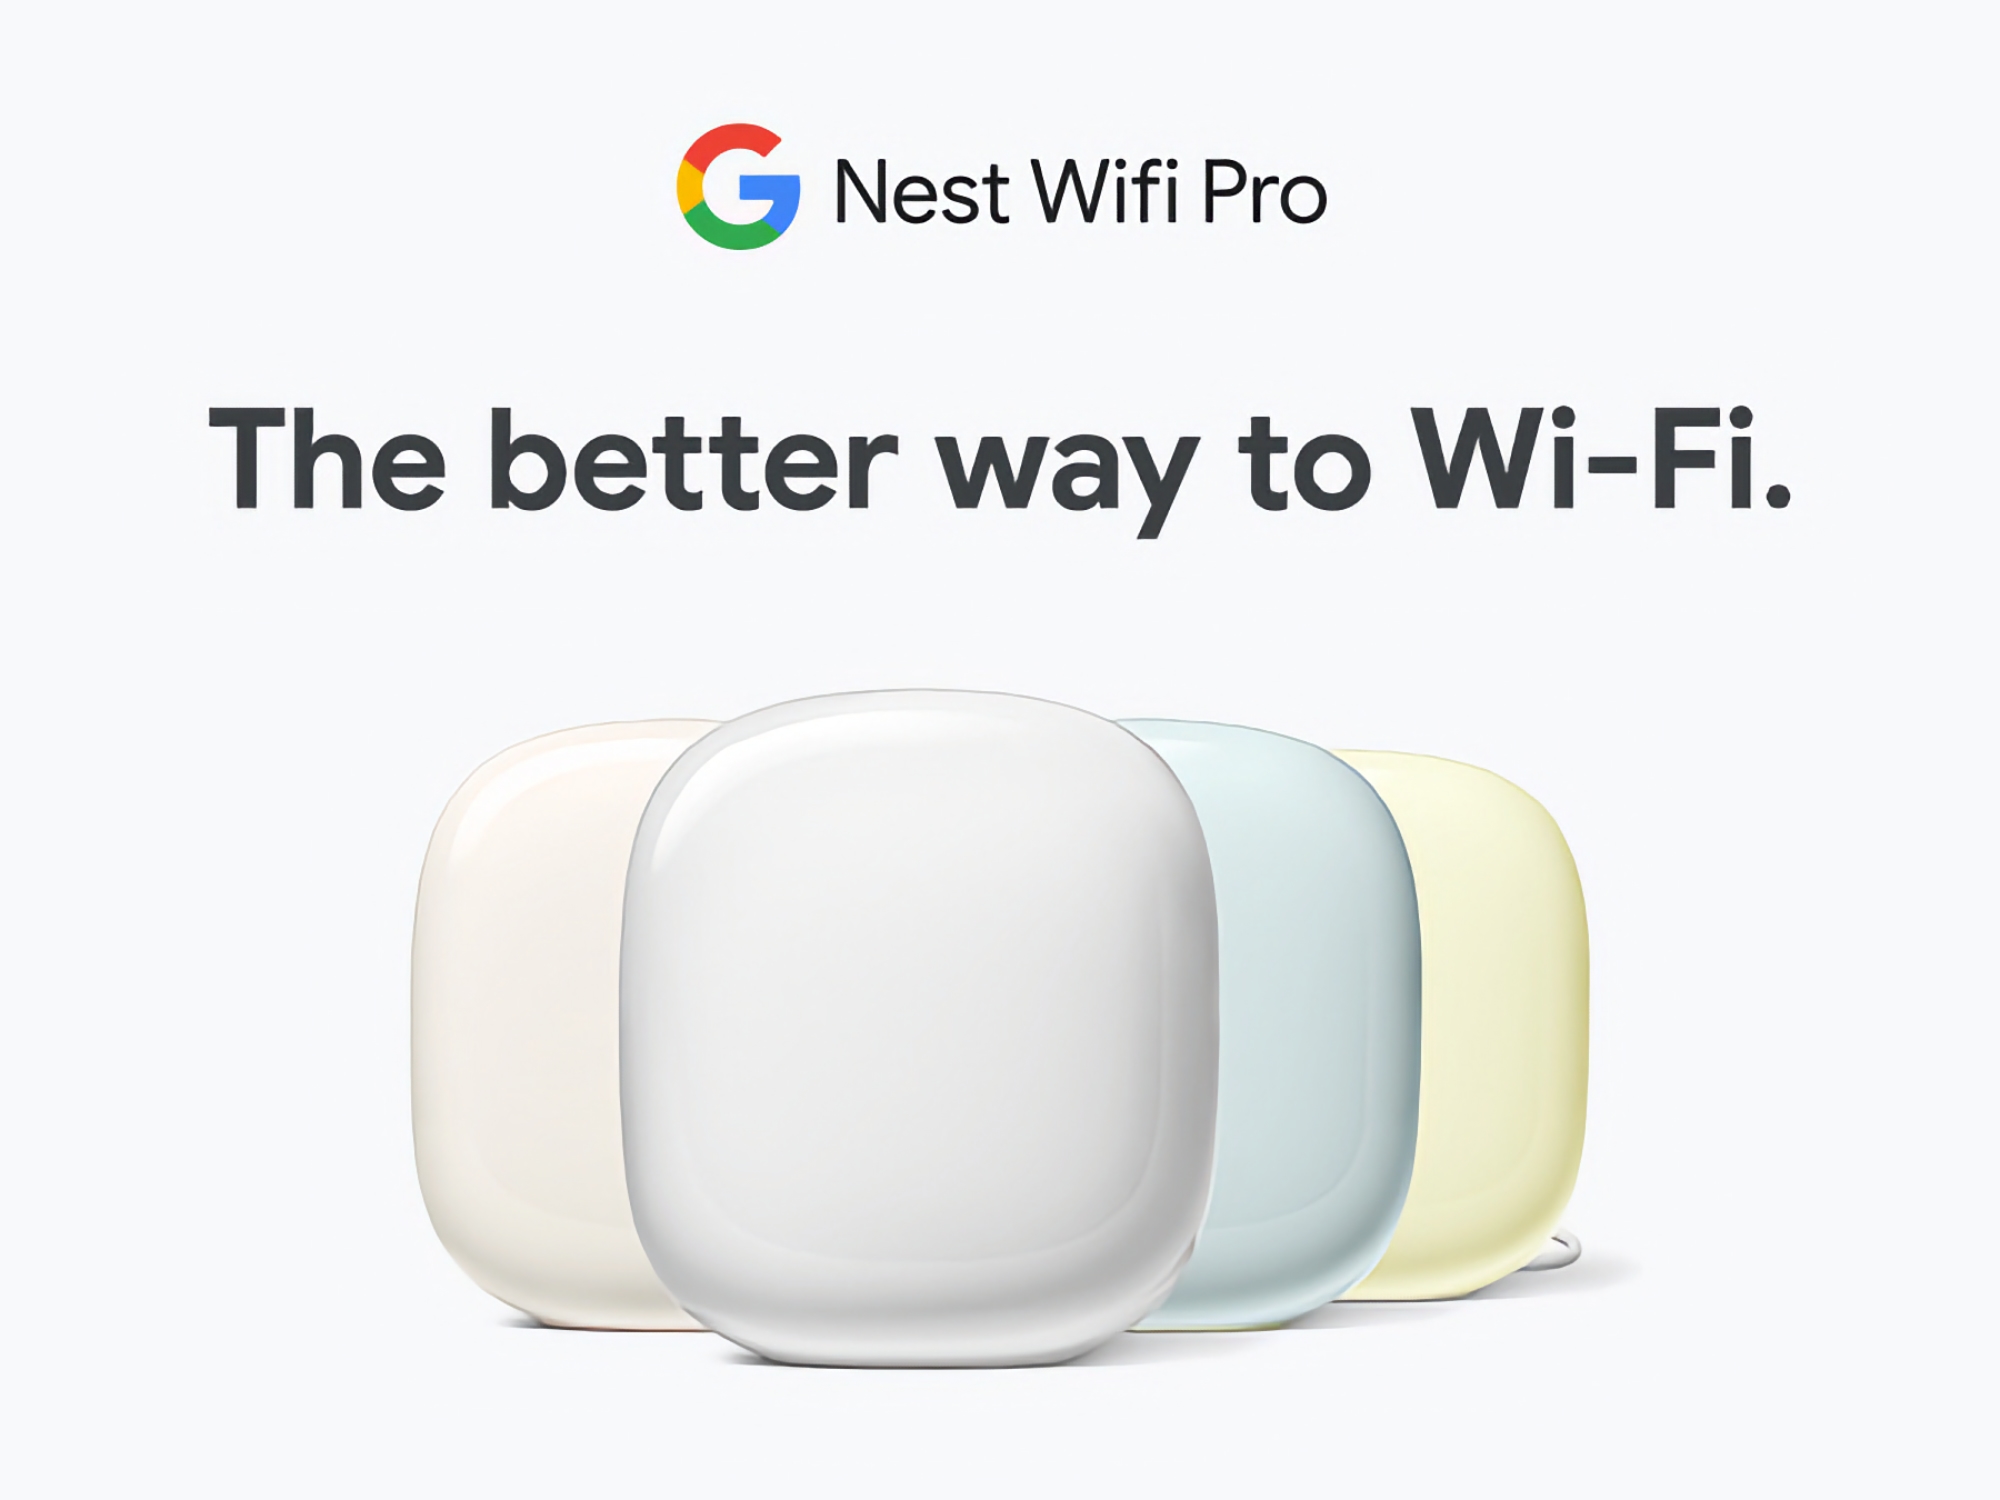 Google Nest WiFi Pro con supporto per tre bande e Wi-Fi 6E è disponibile su Amazon con uno sconto fino a 60€.